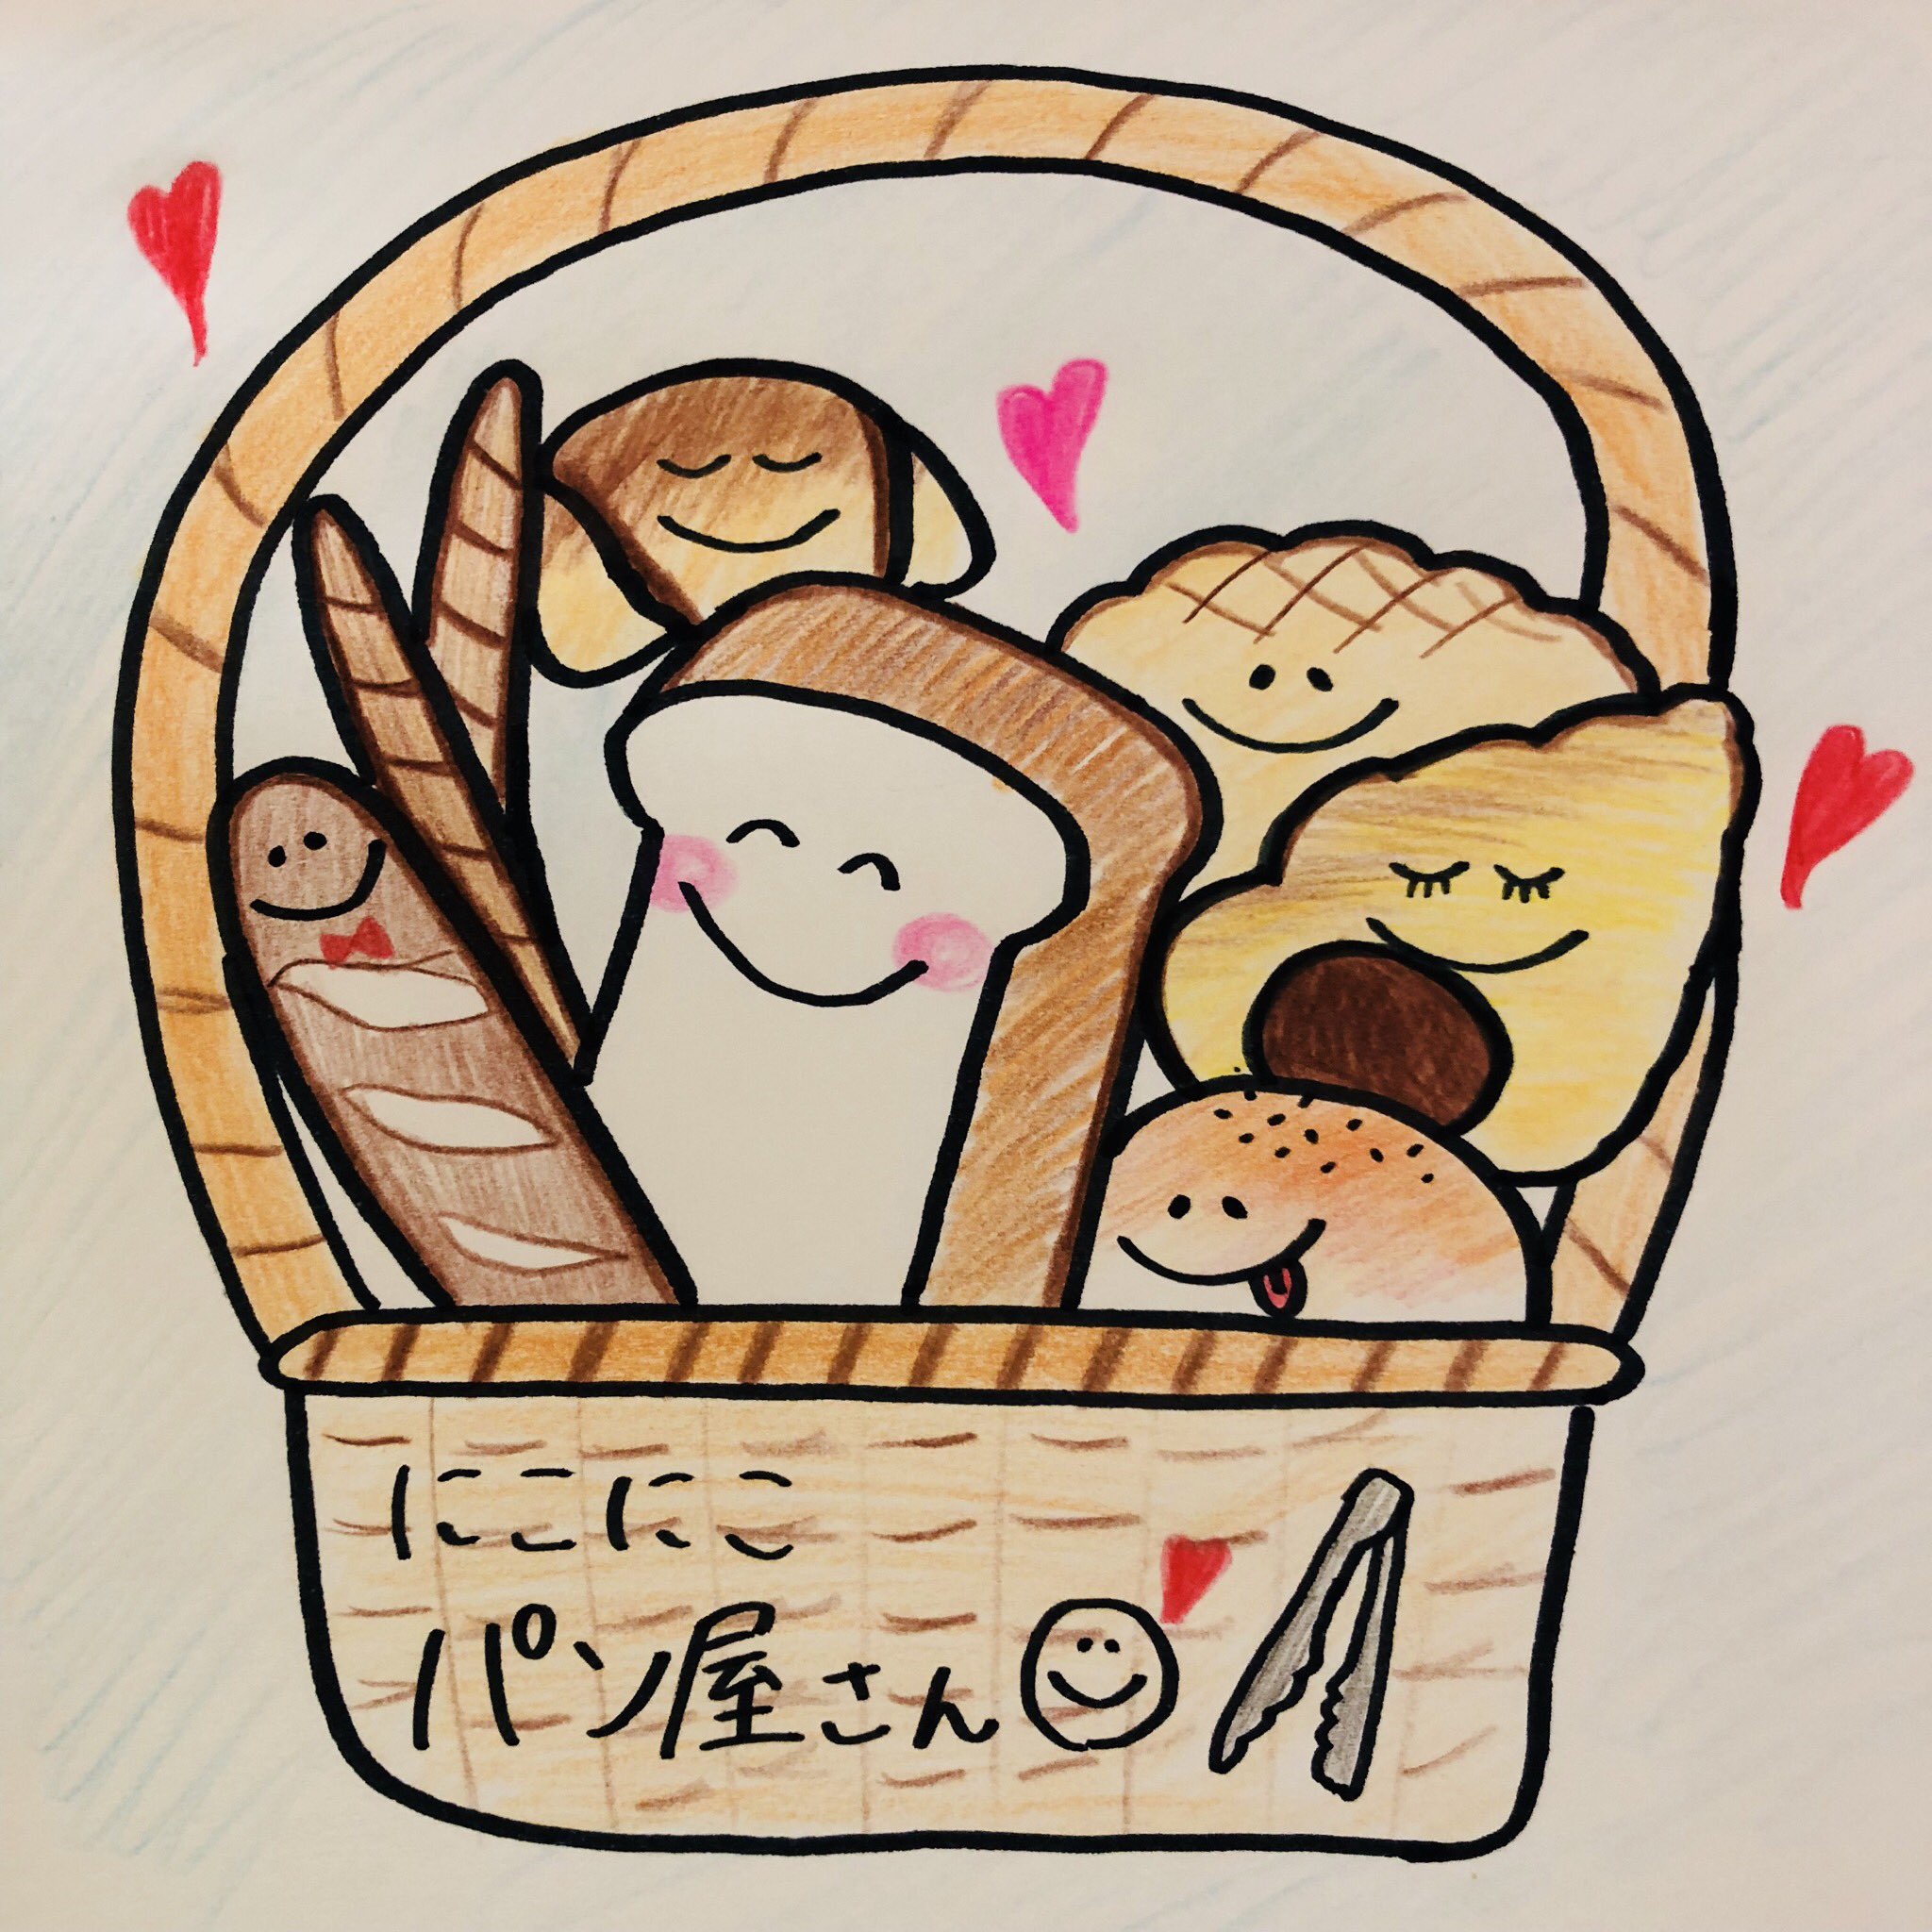 ちゃんりーu いい香りに誘われて食べたくなるものpart2 イラスト 簡単 パン 可愛い 癒し デザイン 食パン フランスパン チョココロネ あんパン メロンパン Illustration Cute Bread T Co X7tq3gkkgq Twitter